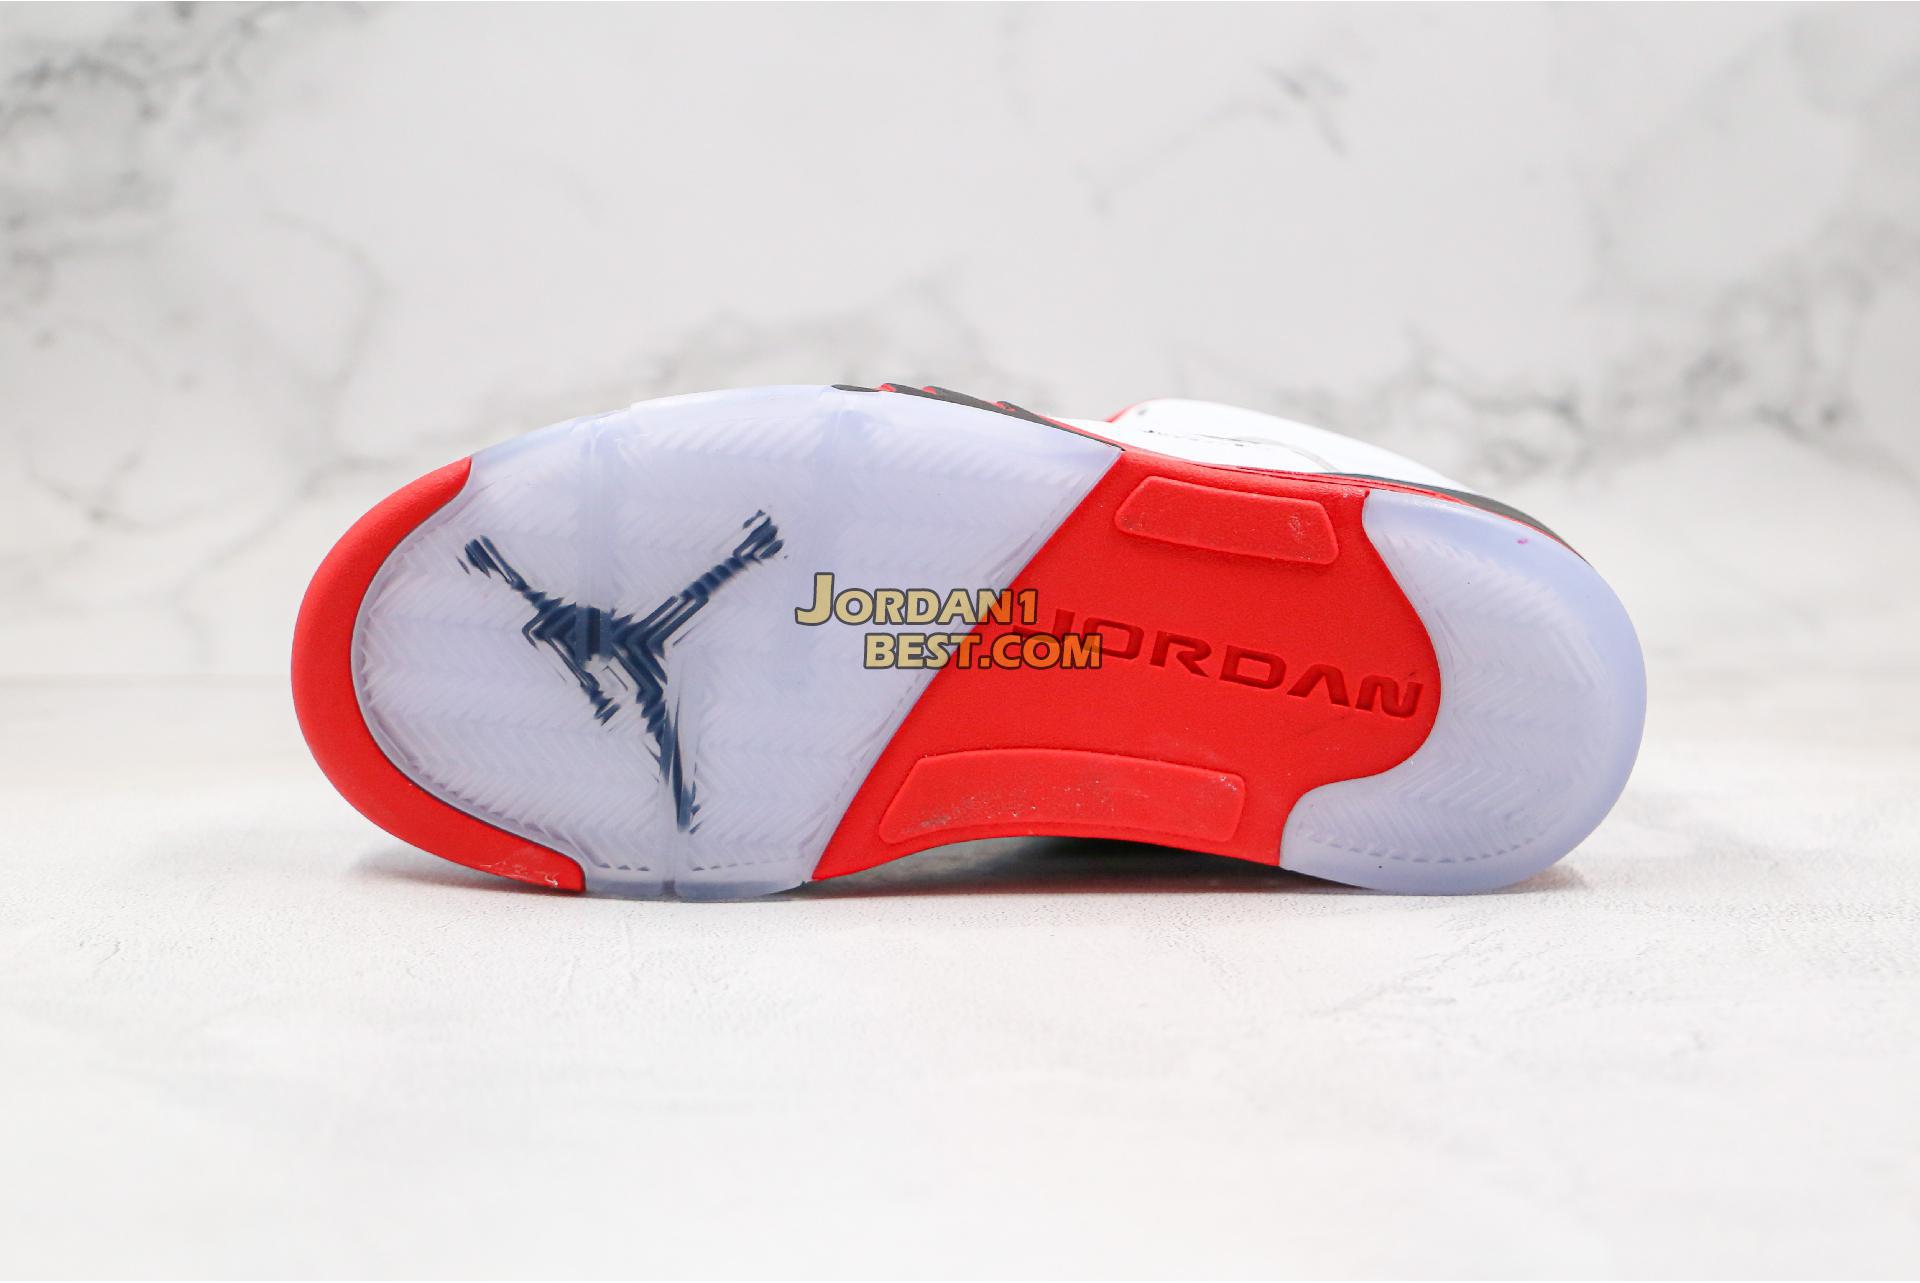 Air Jordan 5 Retro Low GS "Fire Red" 314338-101 Mens